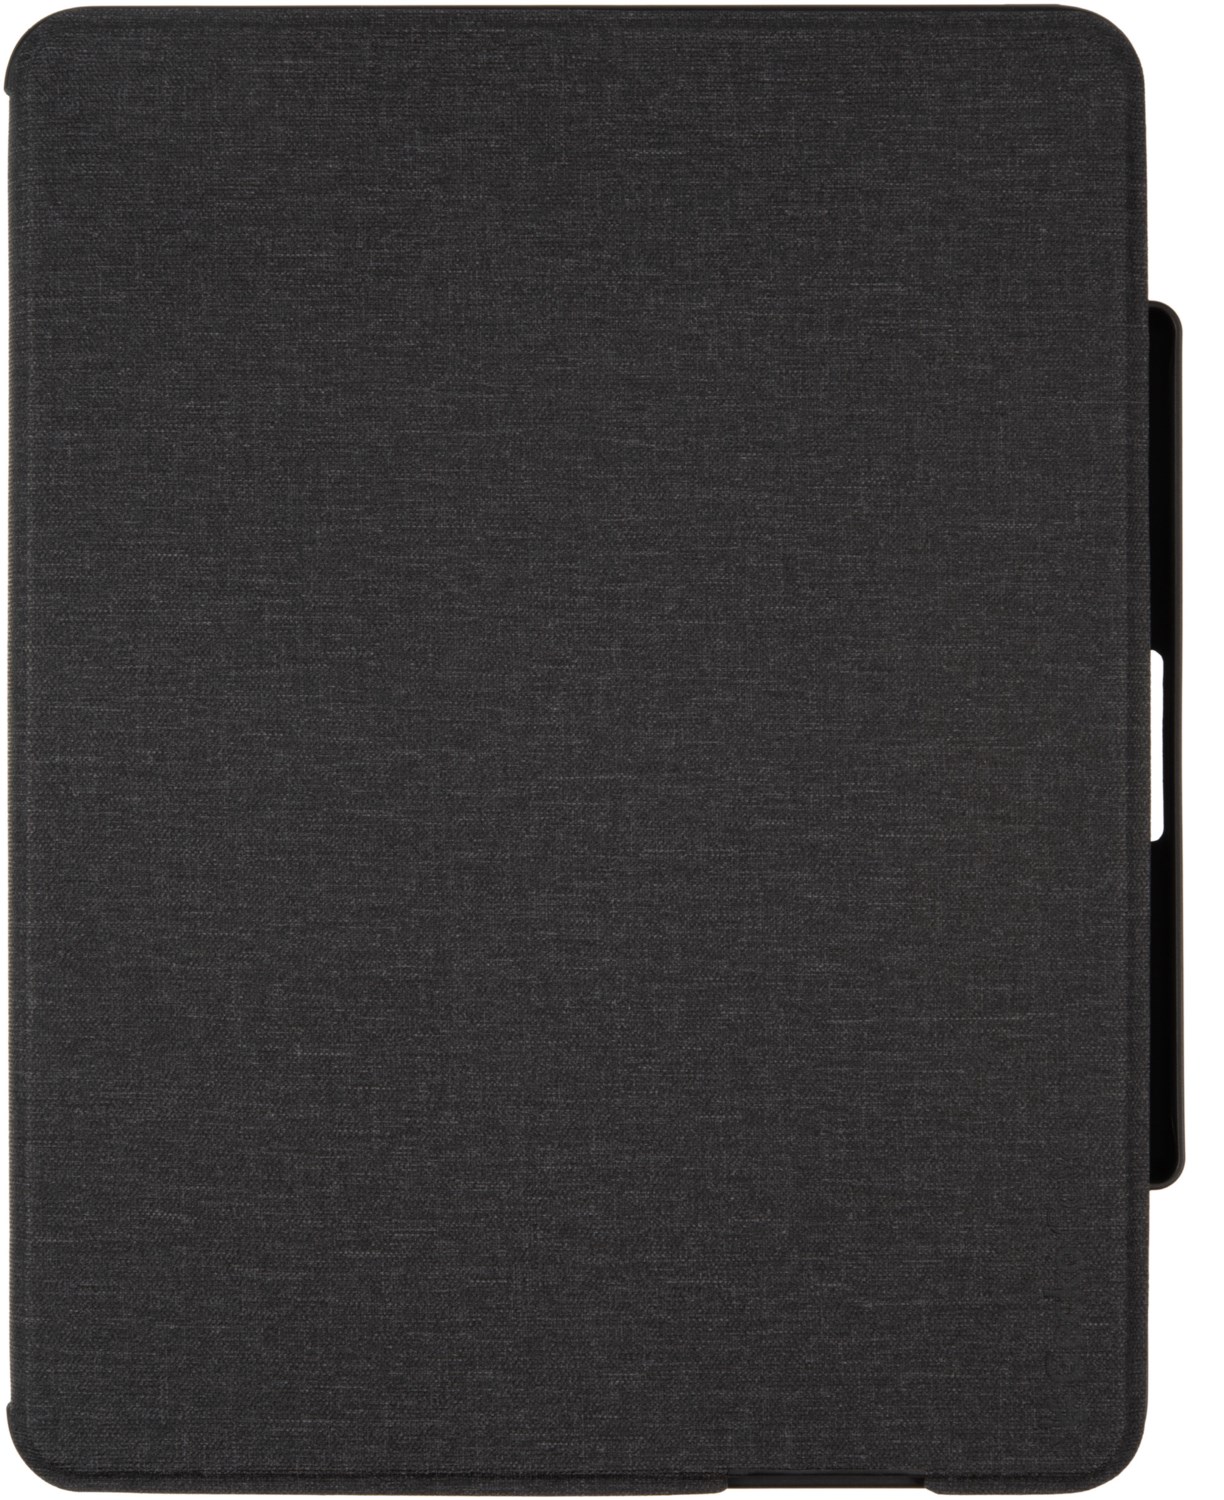 Keyboard Cover (DE) für iPad Pro 12.9 (2021) grau von Gecko